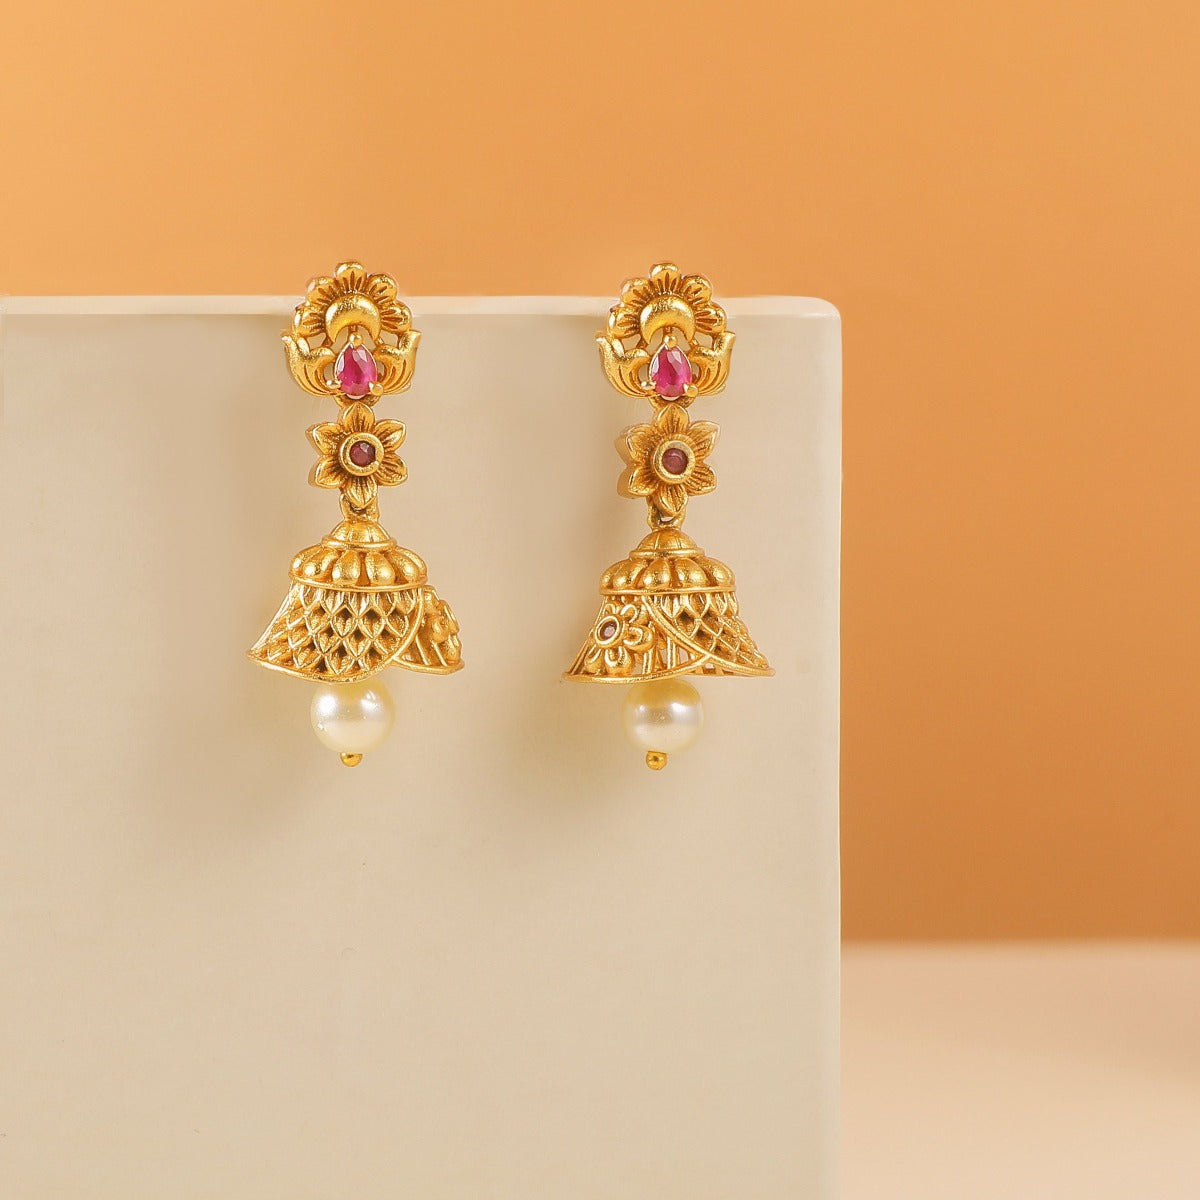 Buy Antique Gold Plated Sana Jhumka Earrings | Tarinika - Tarinika ...